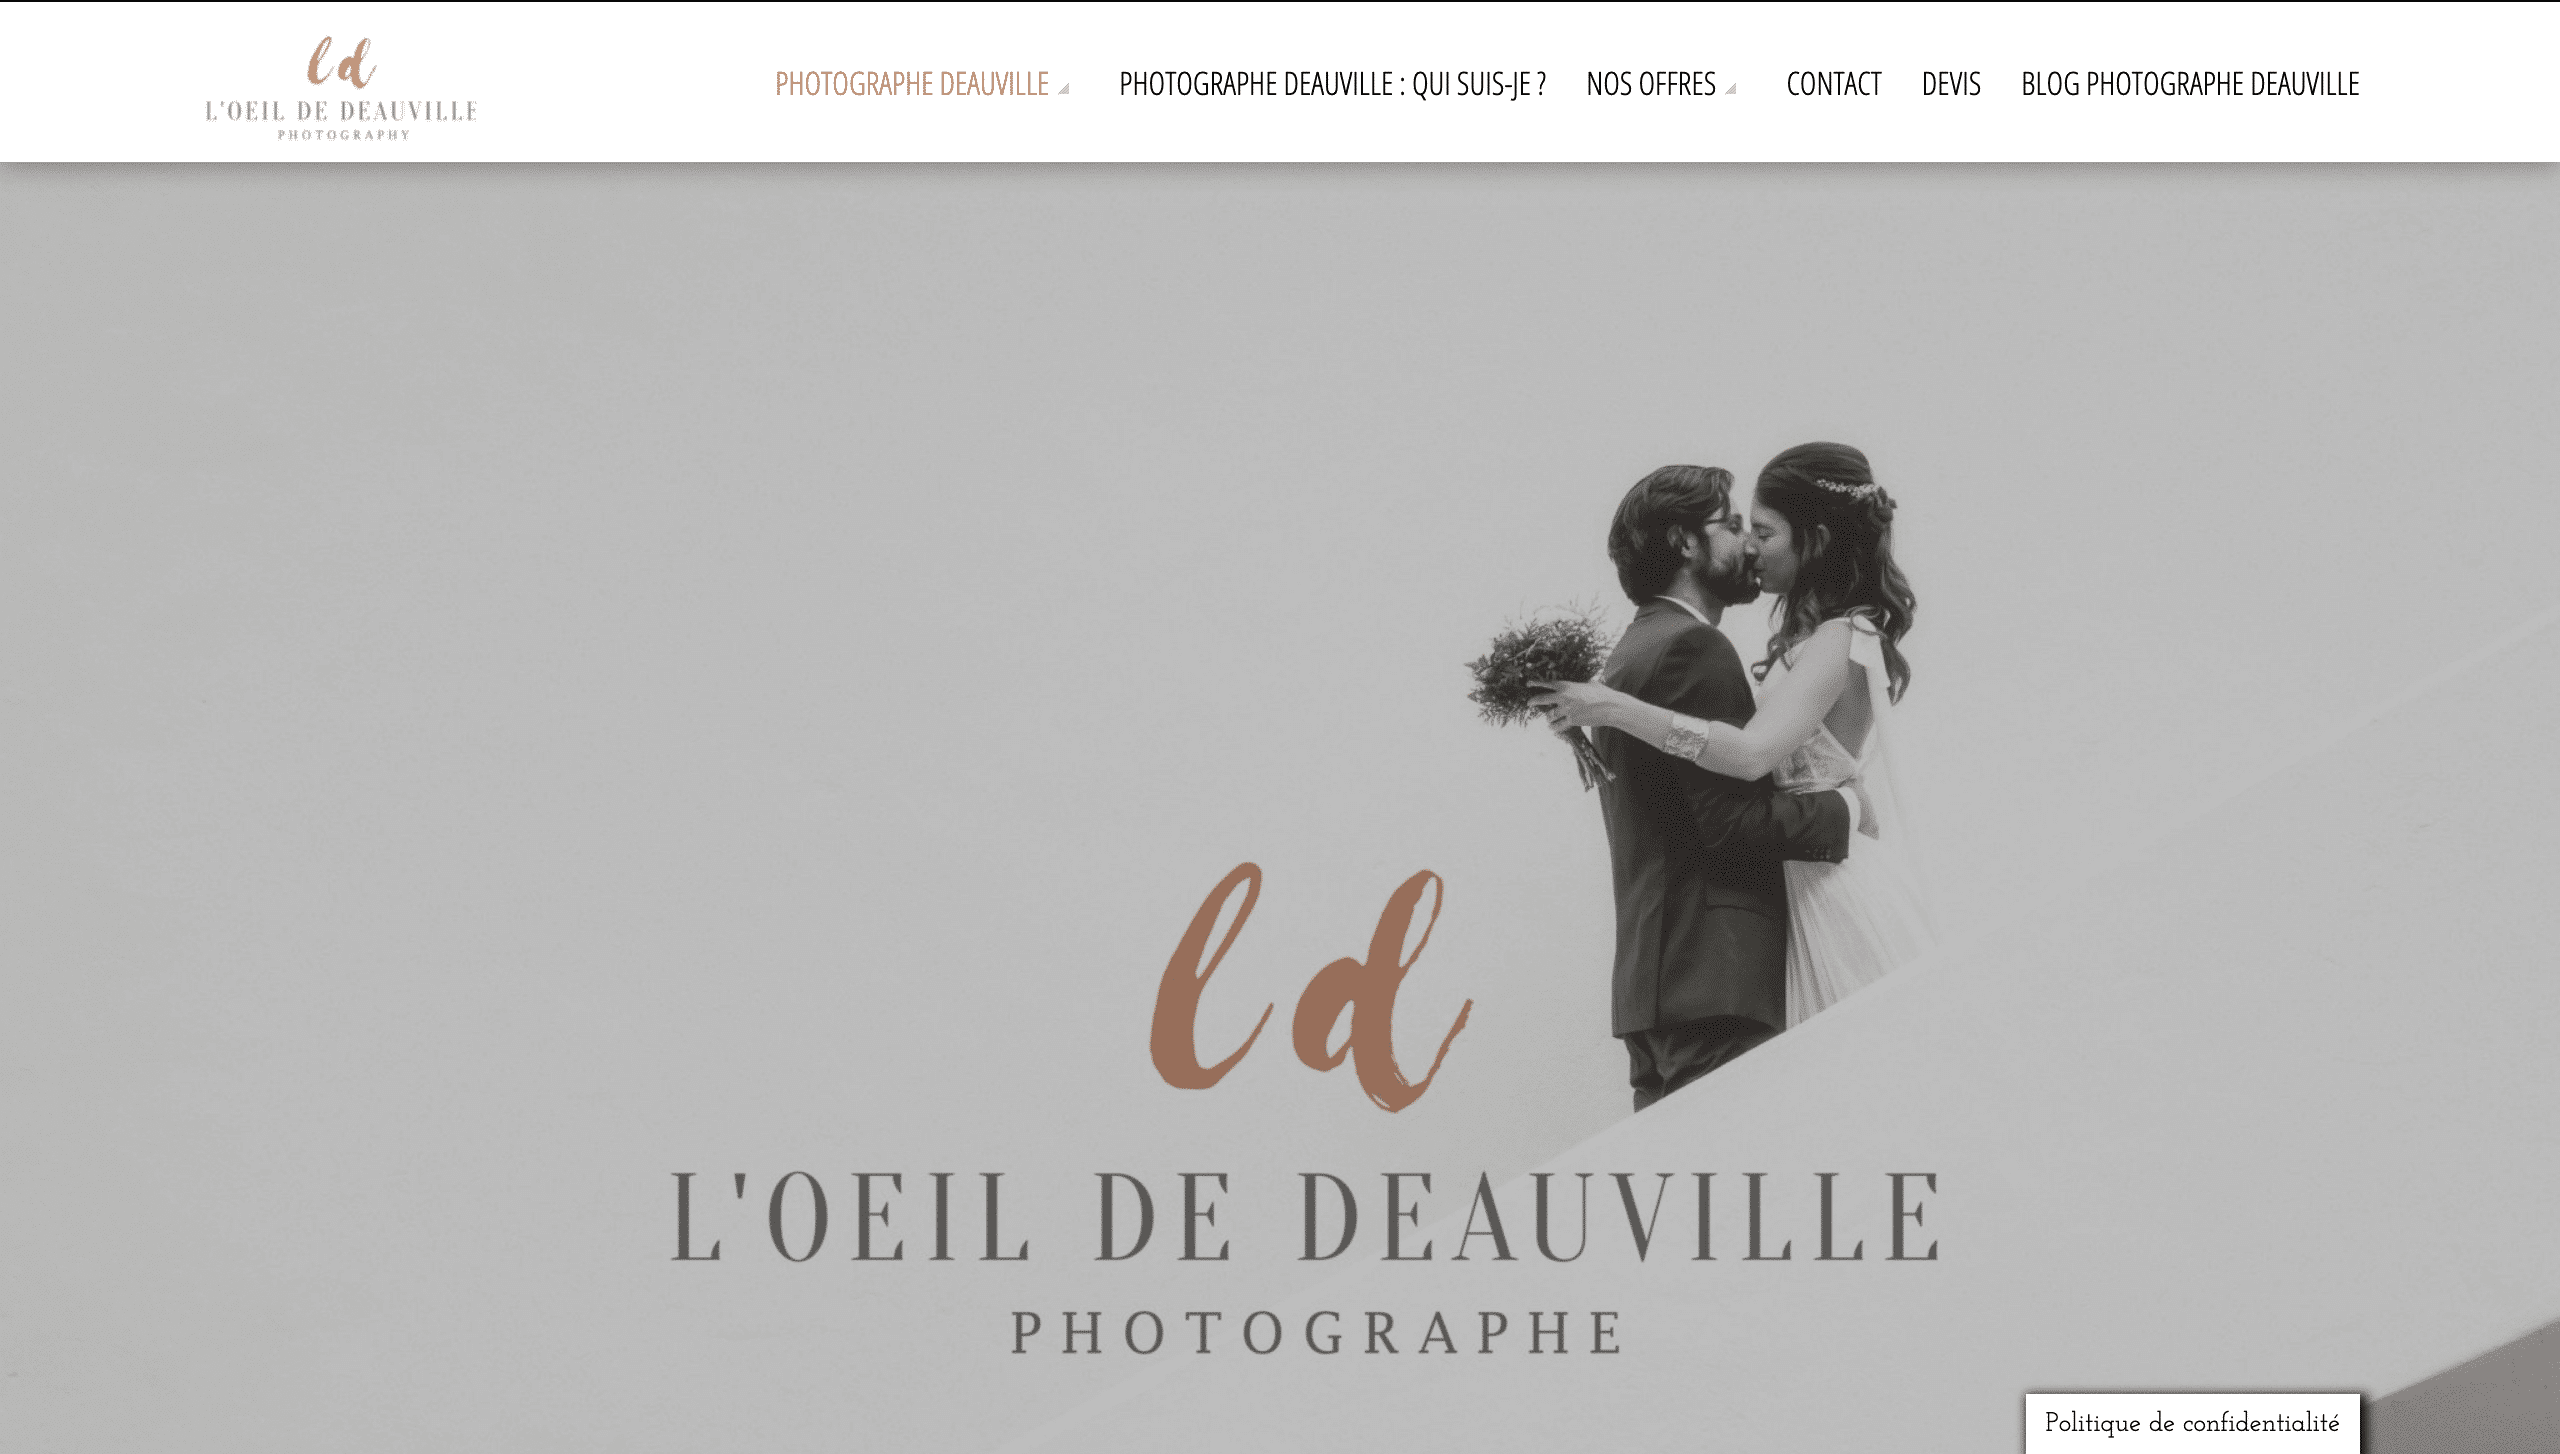 Photographe Deauville - Creation refonte site internet - Portfolio Mouse Coach web agency